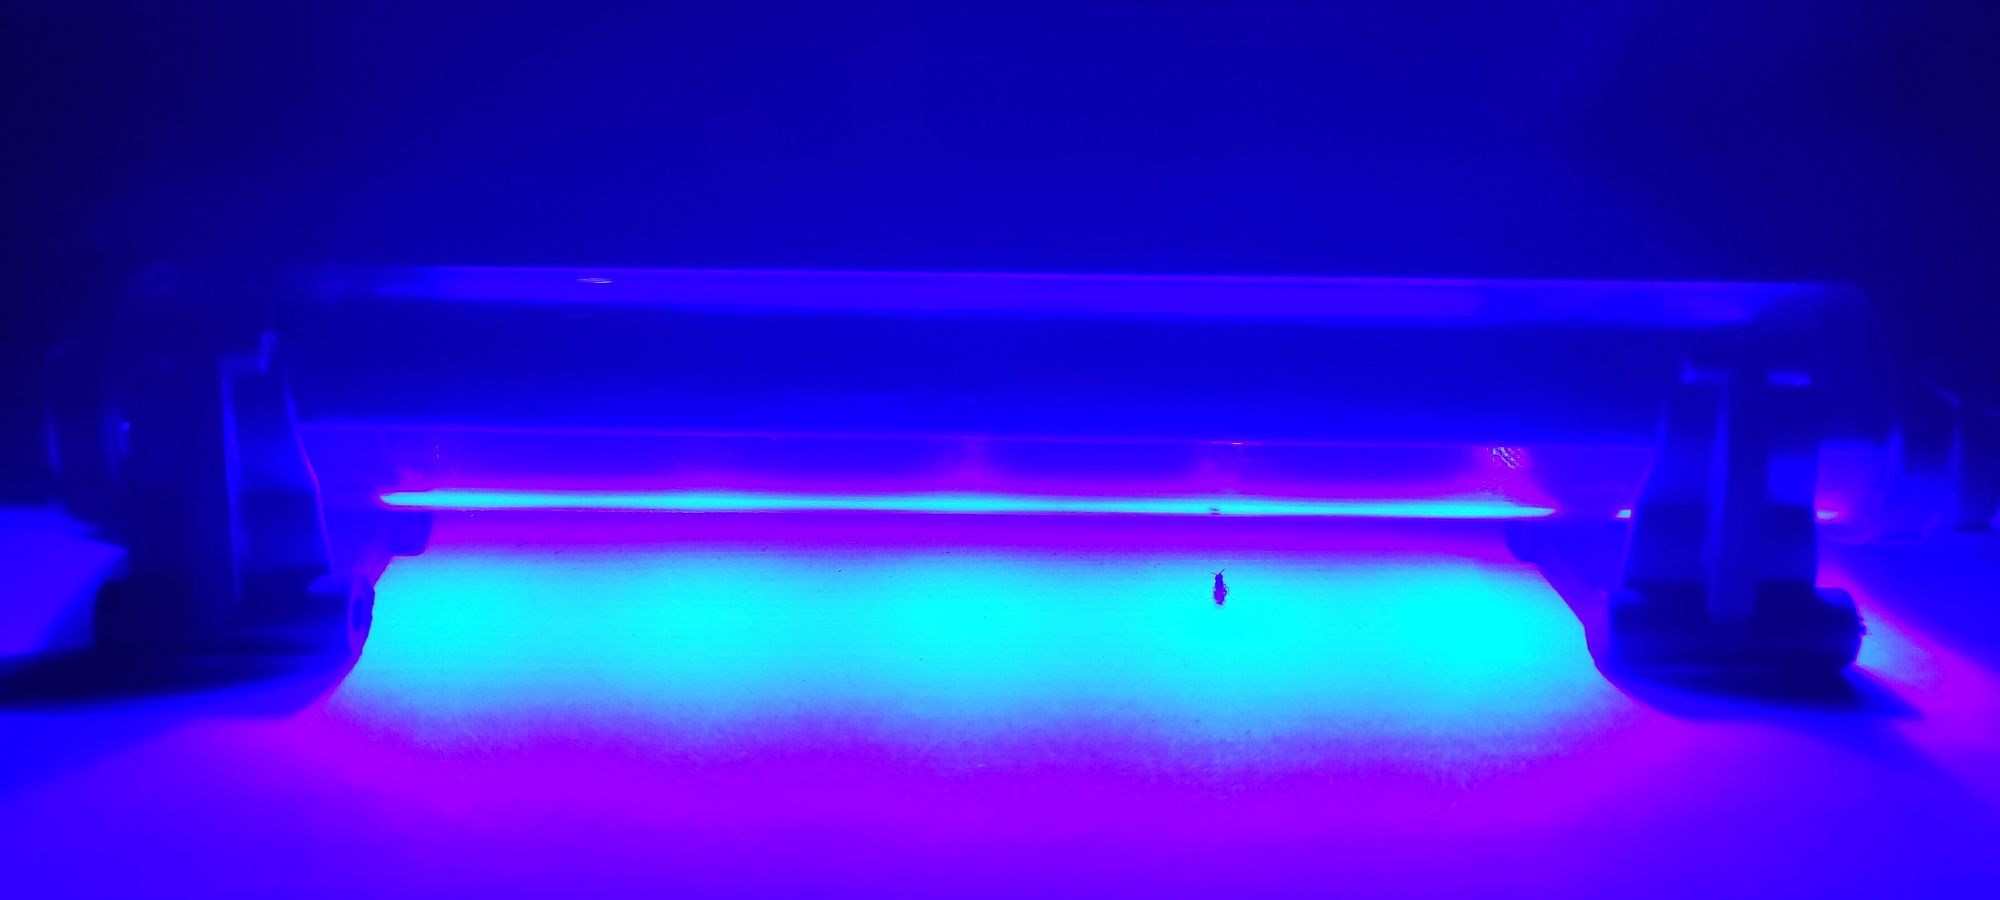 Đèn Led Màu Xanh Dương Dài 20cm Trang Trí Bể Cá